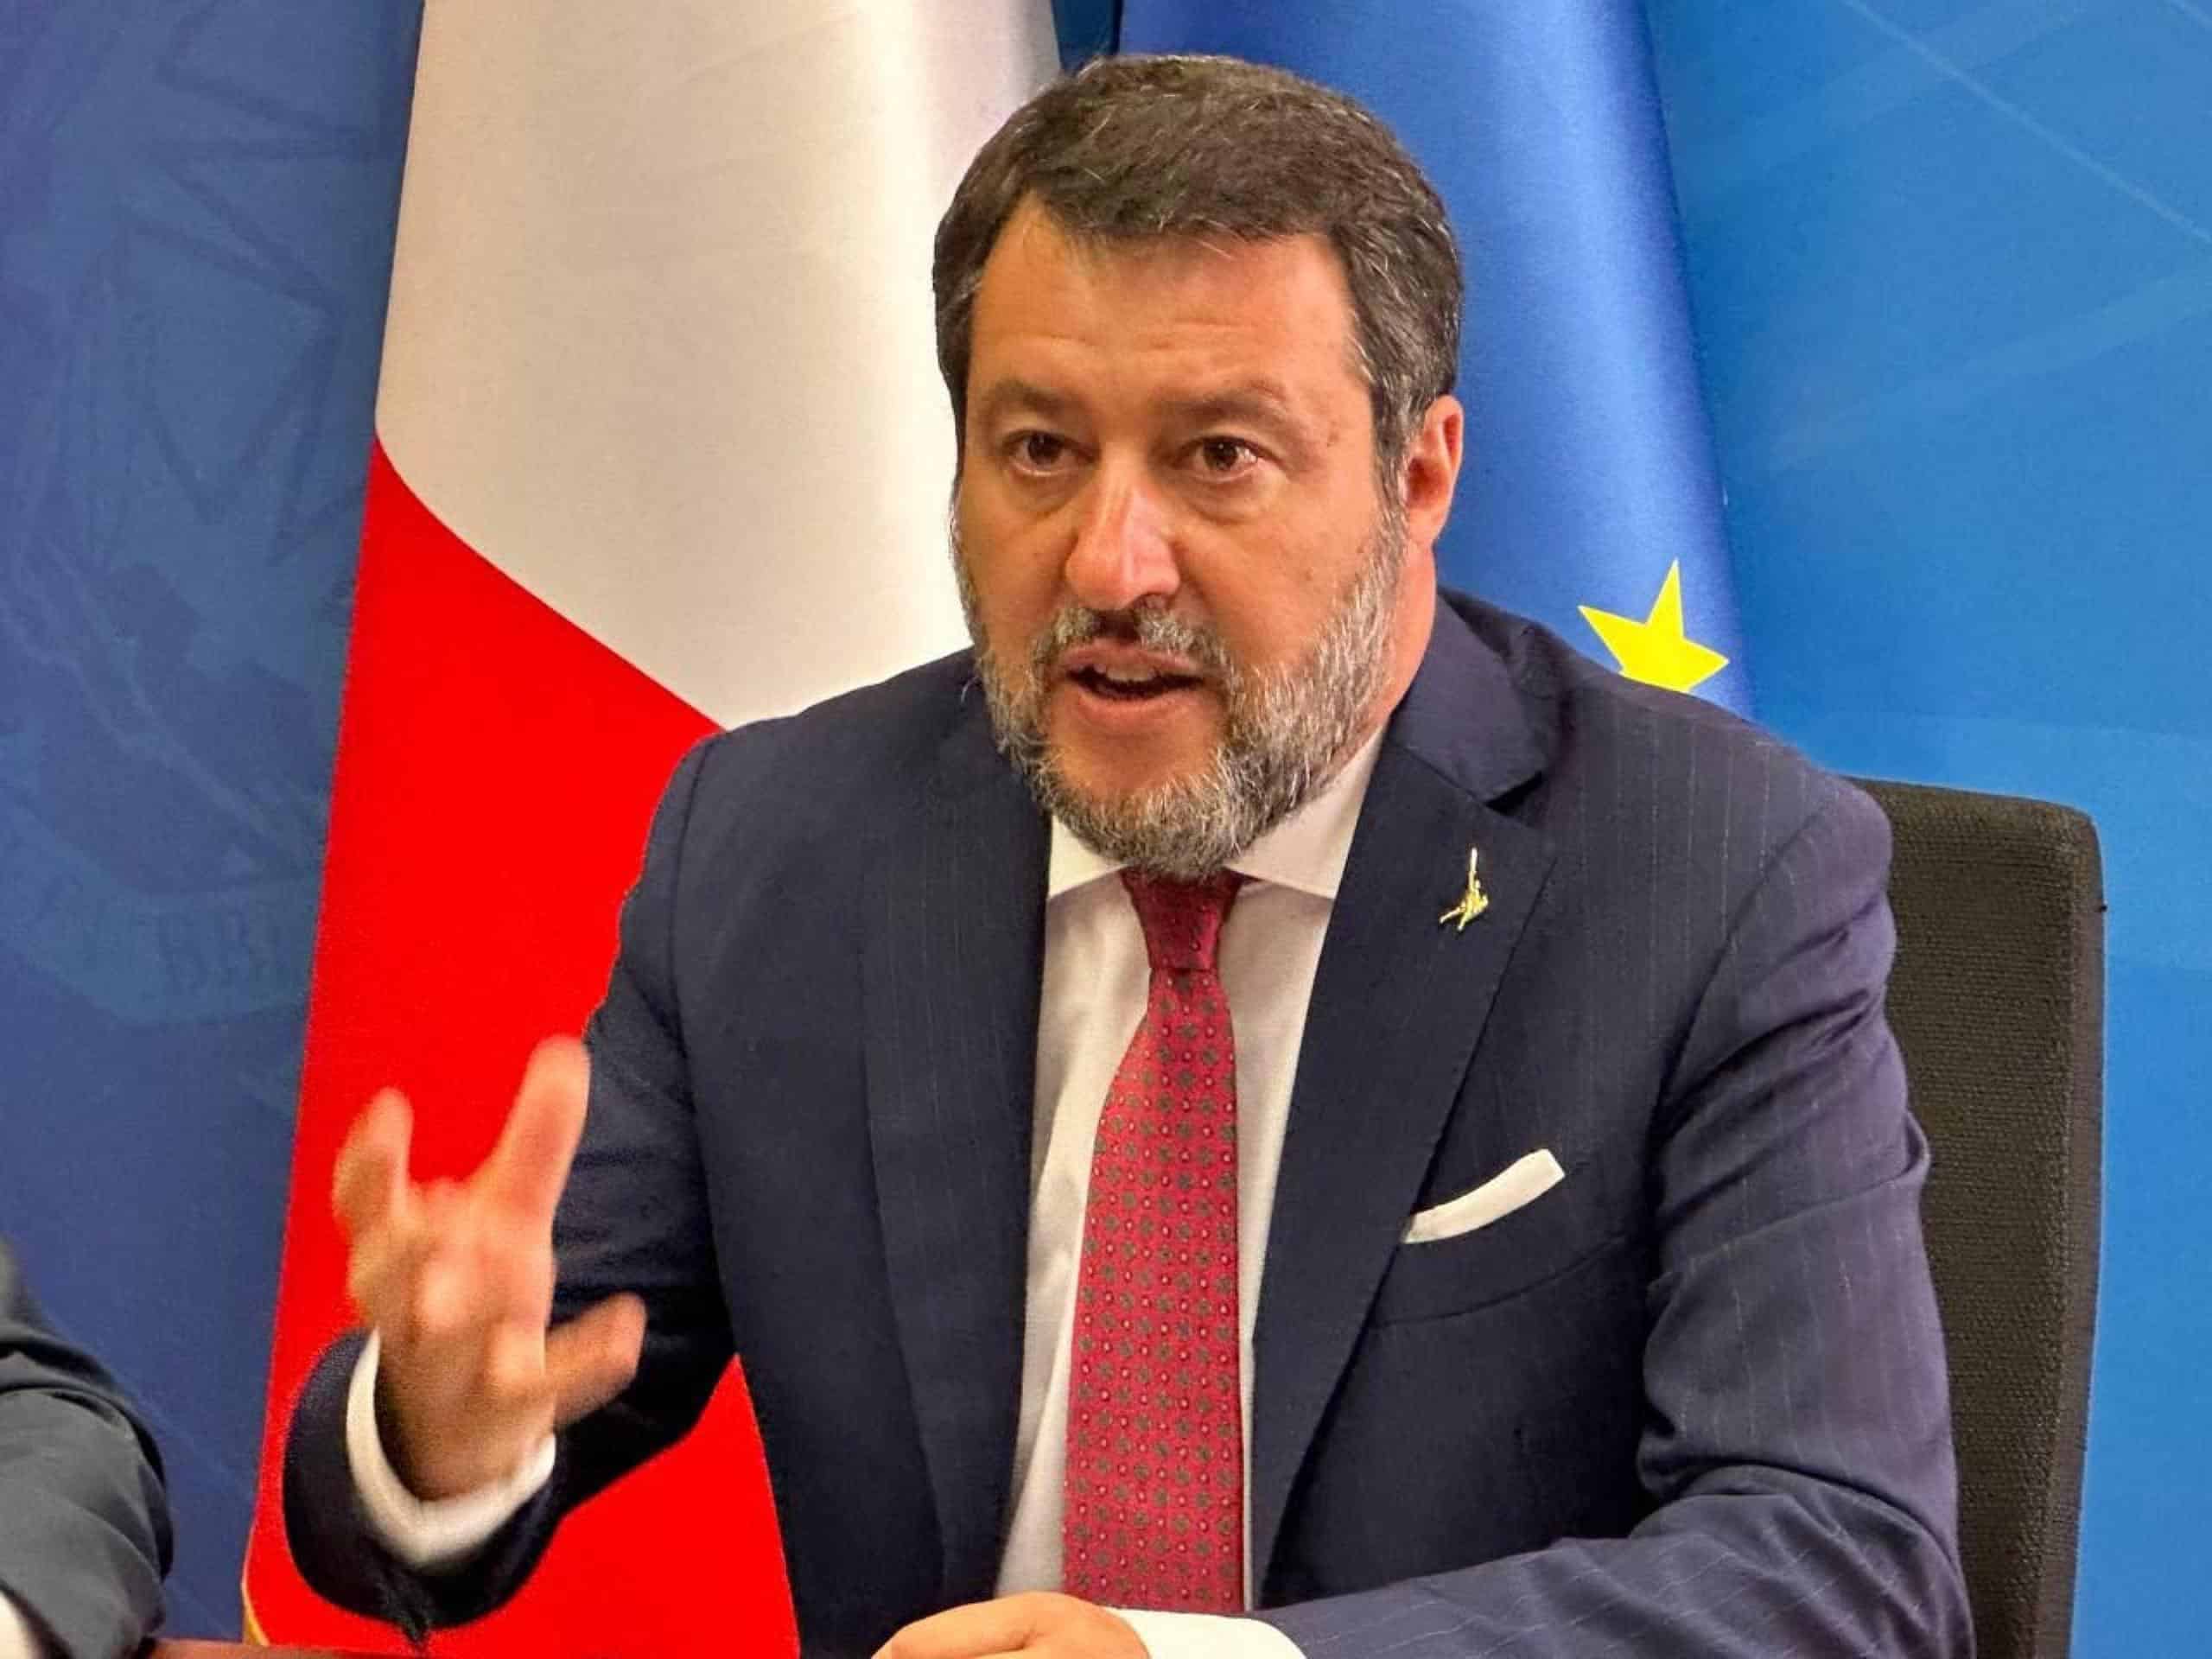 Salvini si scaglia contro la guida pericolosa, ma il post è pieno di imprecisioni [VIDEO]